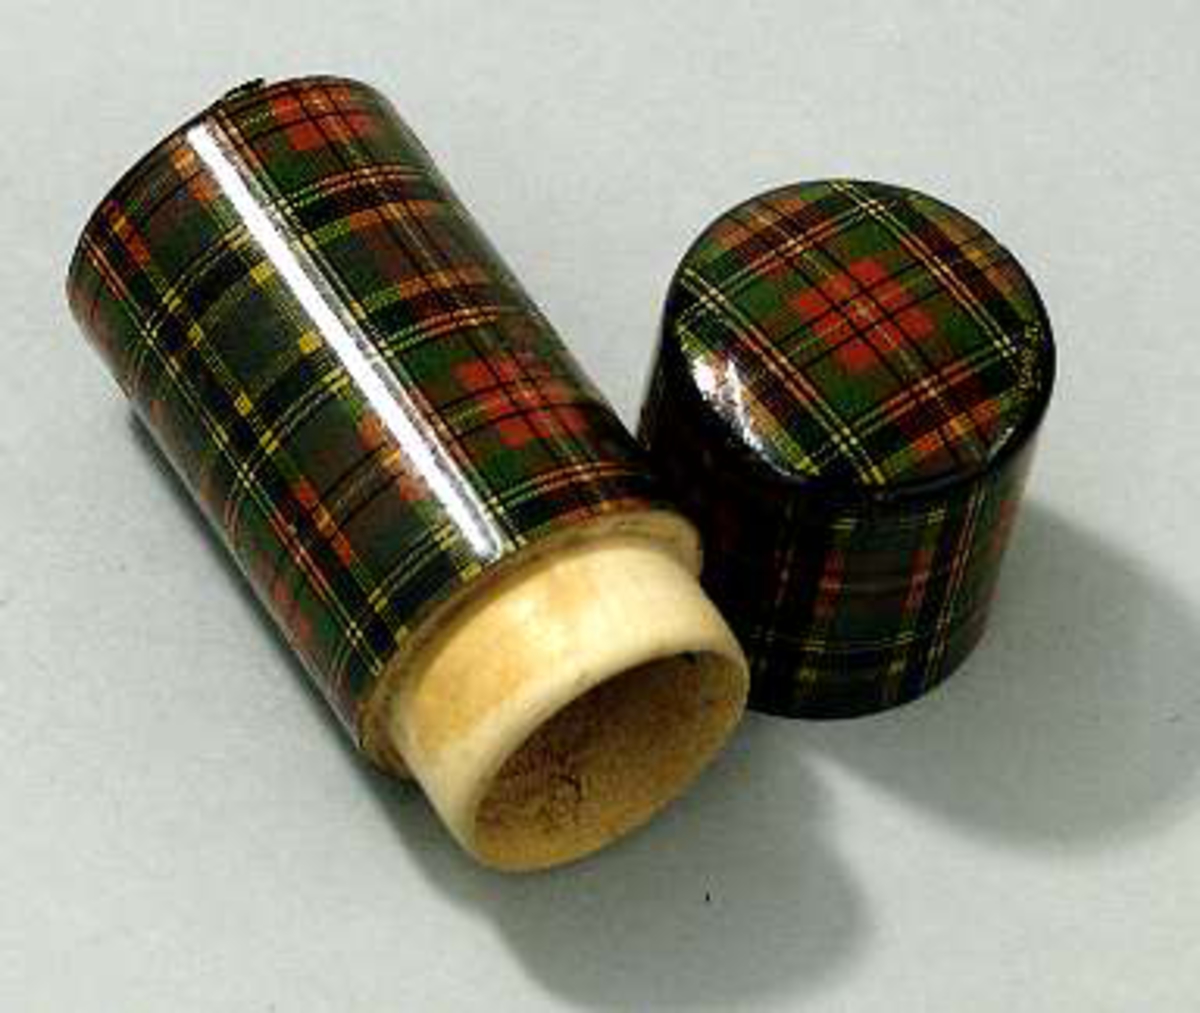 Fodral av trä, cylinderformat med skotskrutig dekor. På lockets översida står "Mc Beth" i guld. Bottenplatta av svart papper.